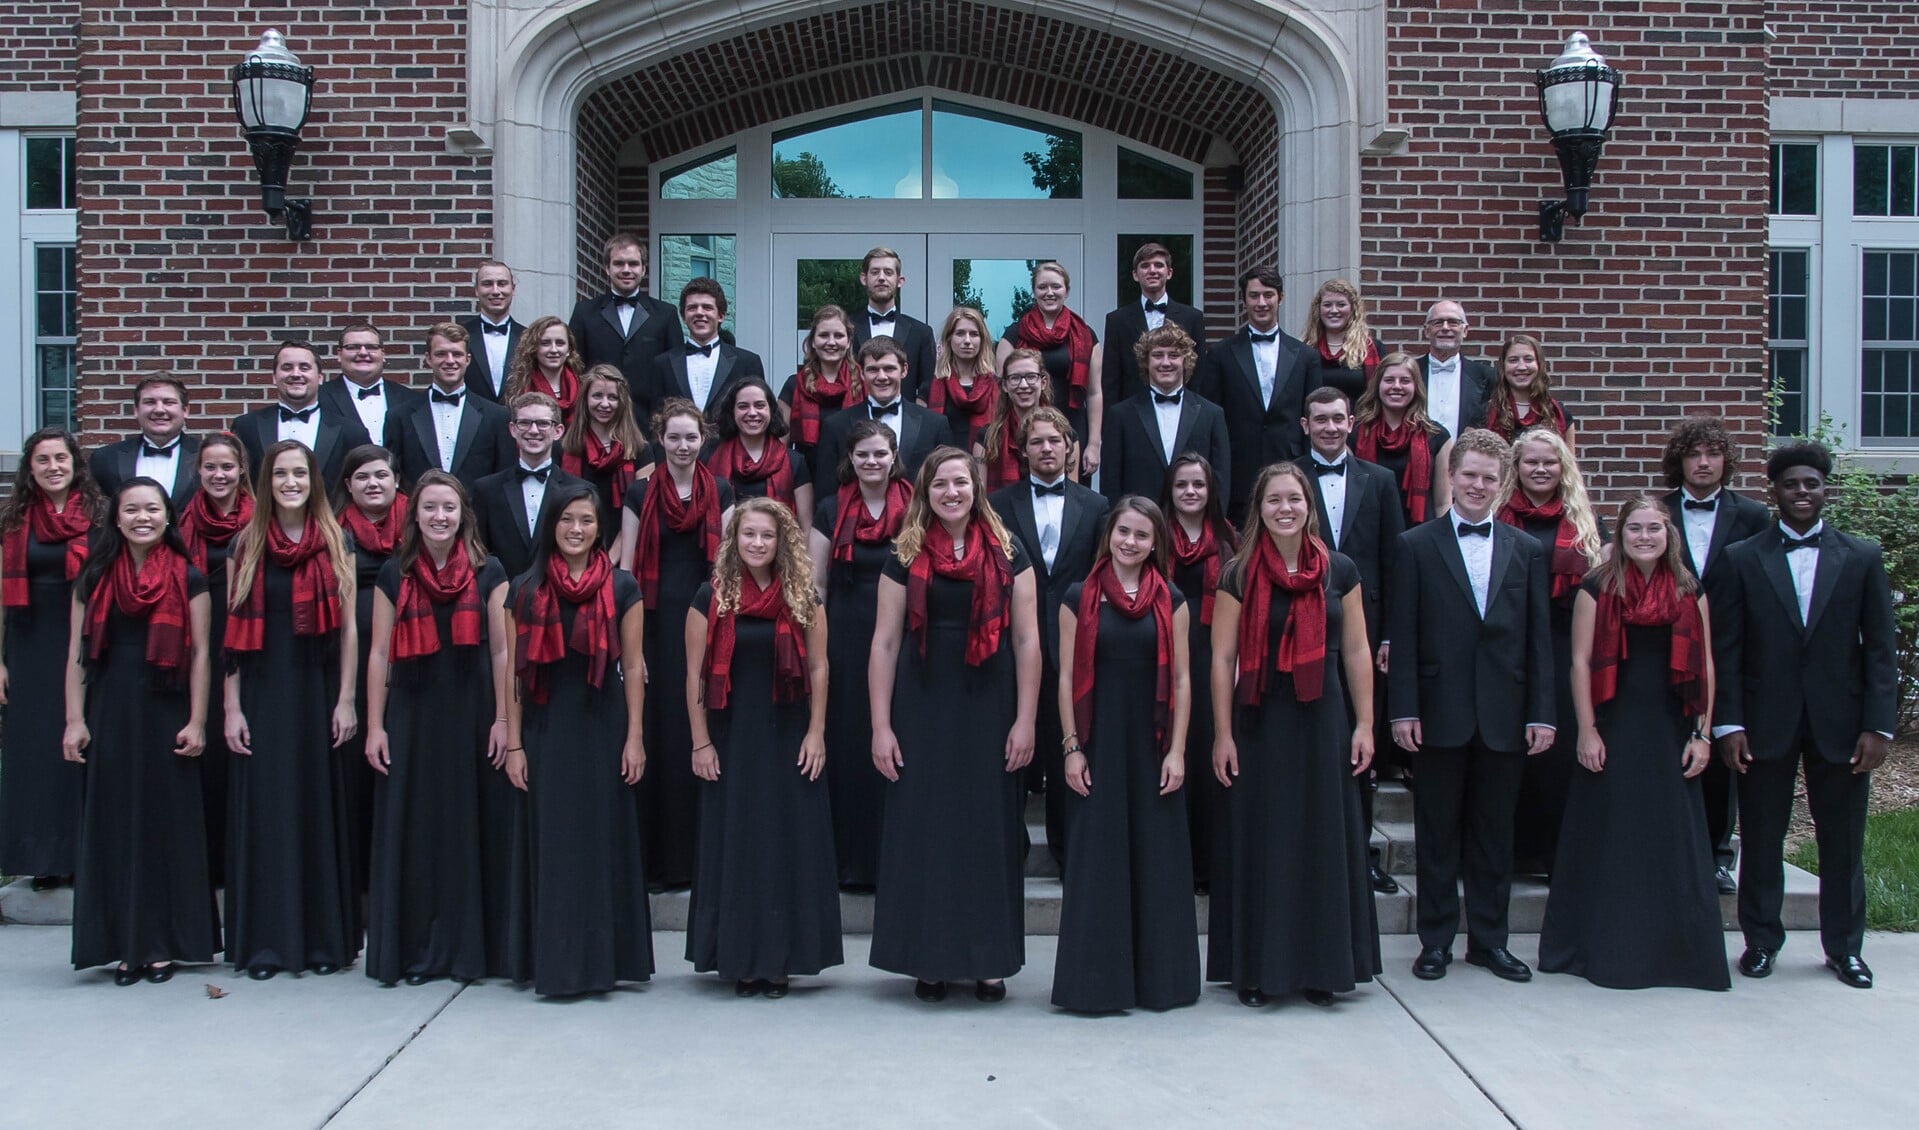 Het koor bestaat uit 44 zangers/zangeressen, allen studenten van het Bethel College in North Newton, Kansas.